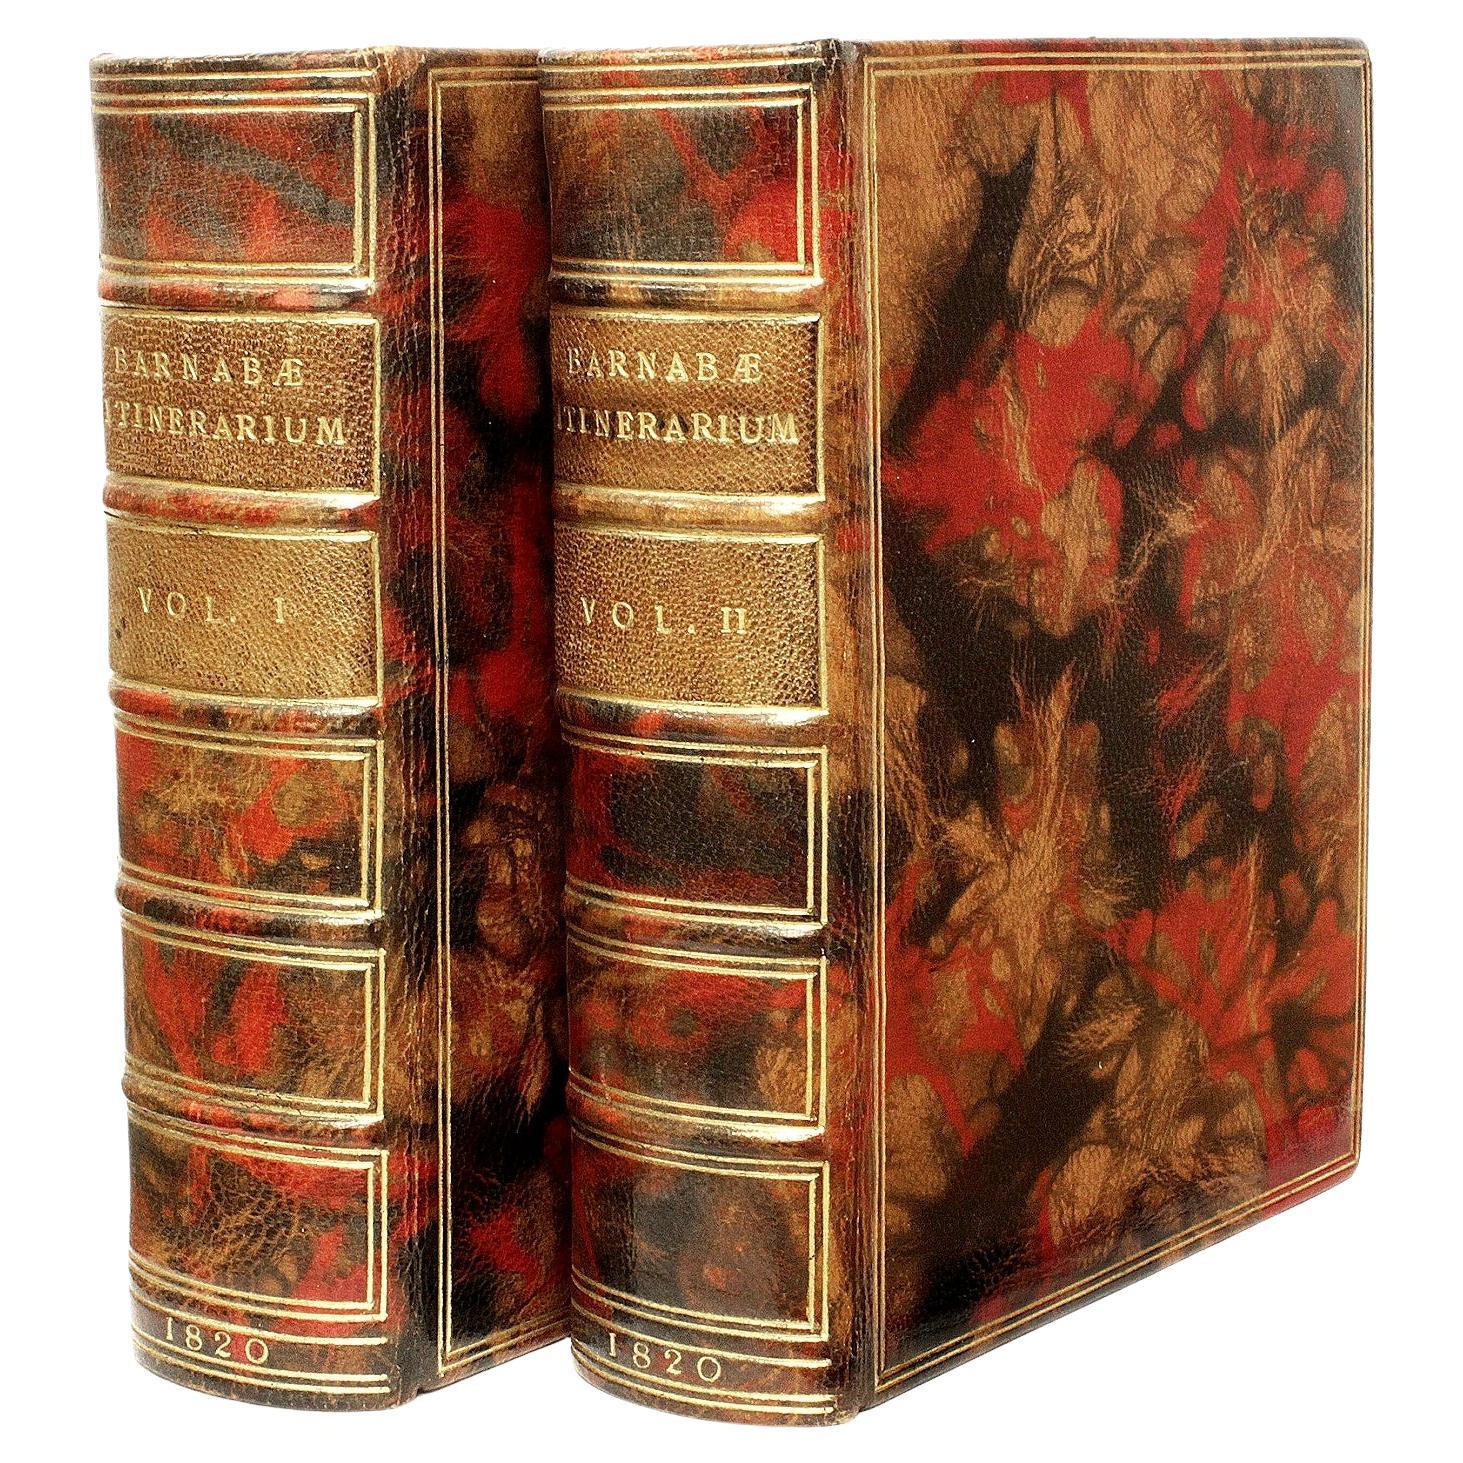 Barnabae Itenerarium, oder Barnabee's Journal. 1820 - 2 Bände - BOUND BY DE COVERLY